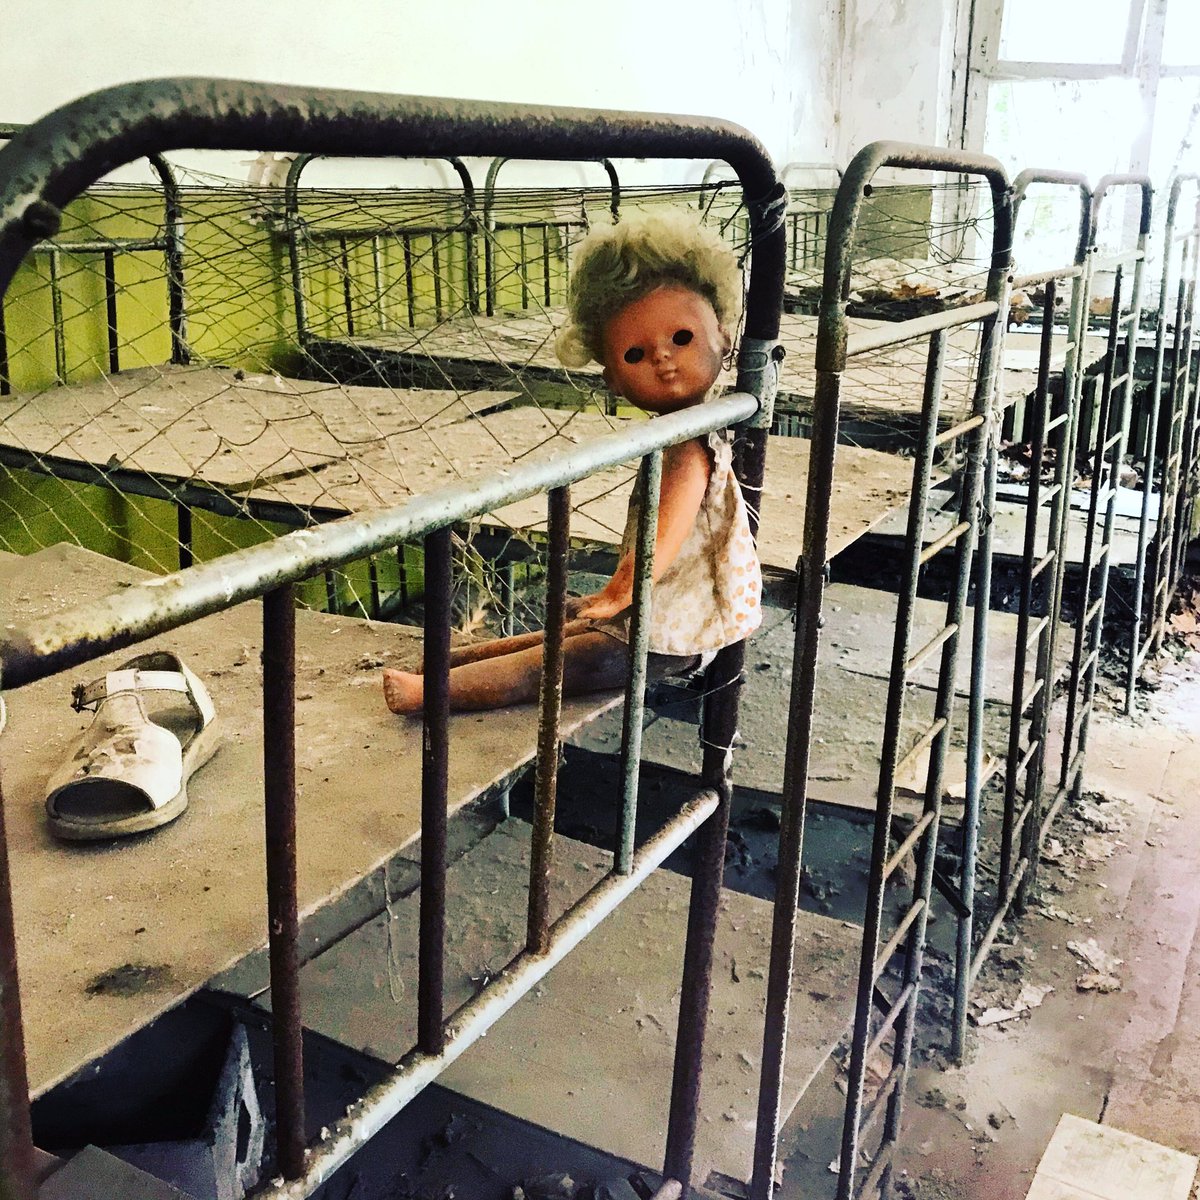 Toutefois une garderie d’enfants plutôt effrayante est toujours visible. Complètement délabré, des jouets sont dispersés çà et là et l’ambiance est plutôt glassante.  #Tchernobyl  (Plus de photos:  http://Instagram.com/nashtagstagram )